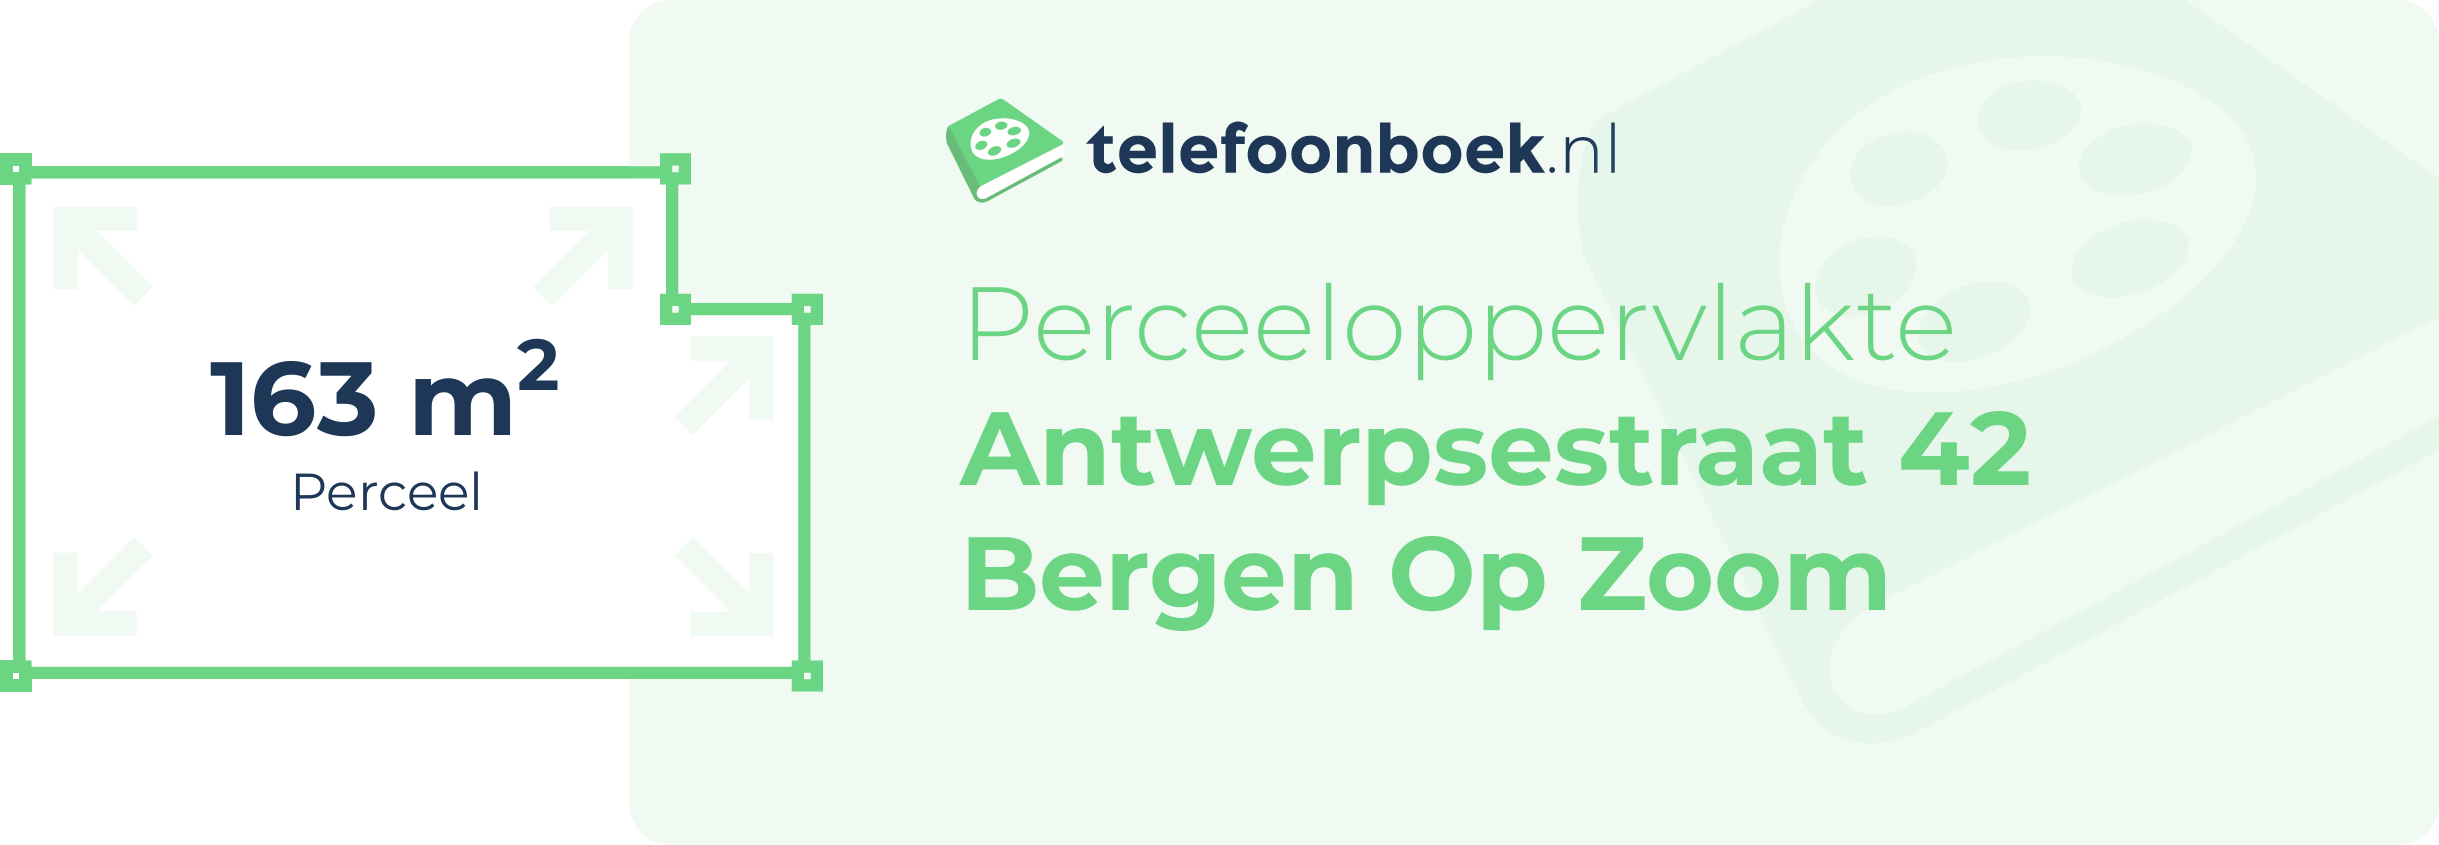 Perceeloppervlakte Antwerpsestraat 42 Bergen Op Zoom